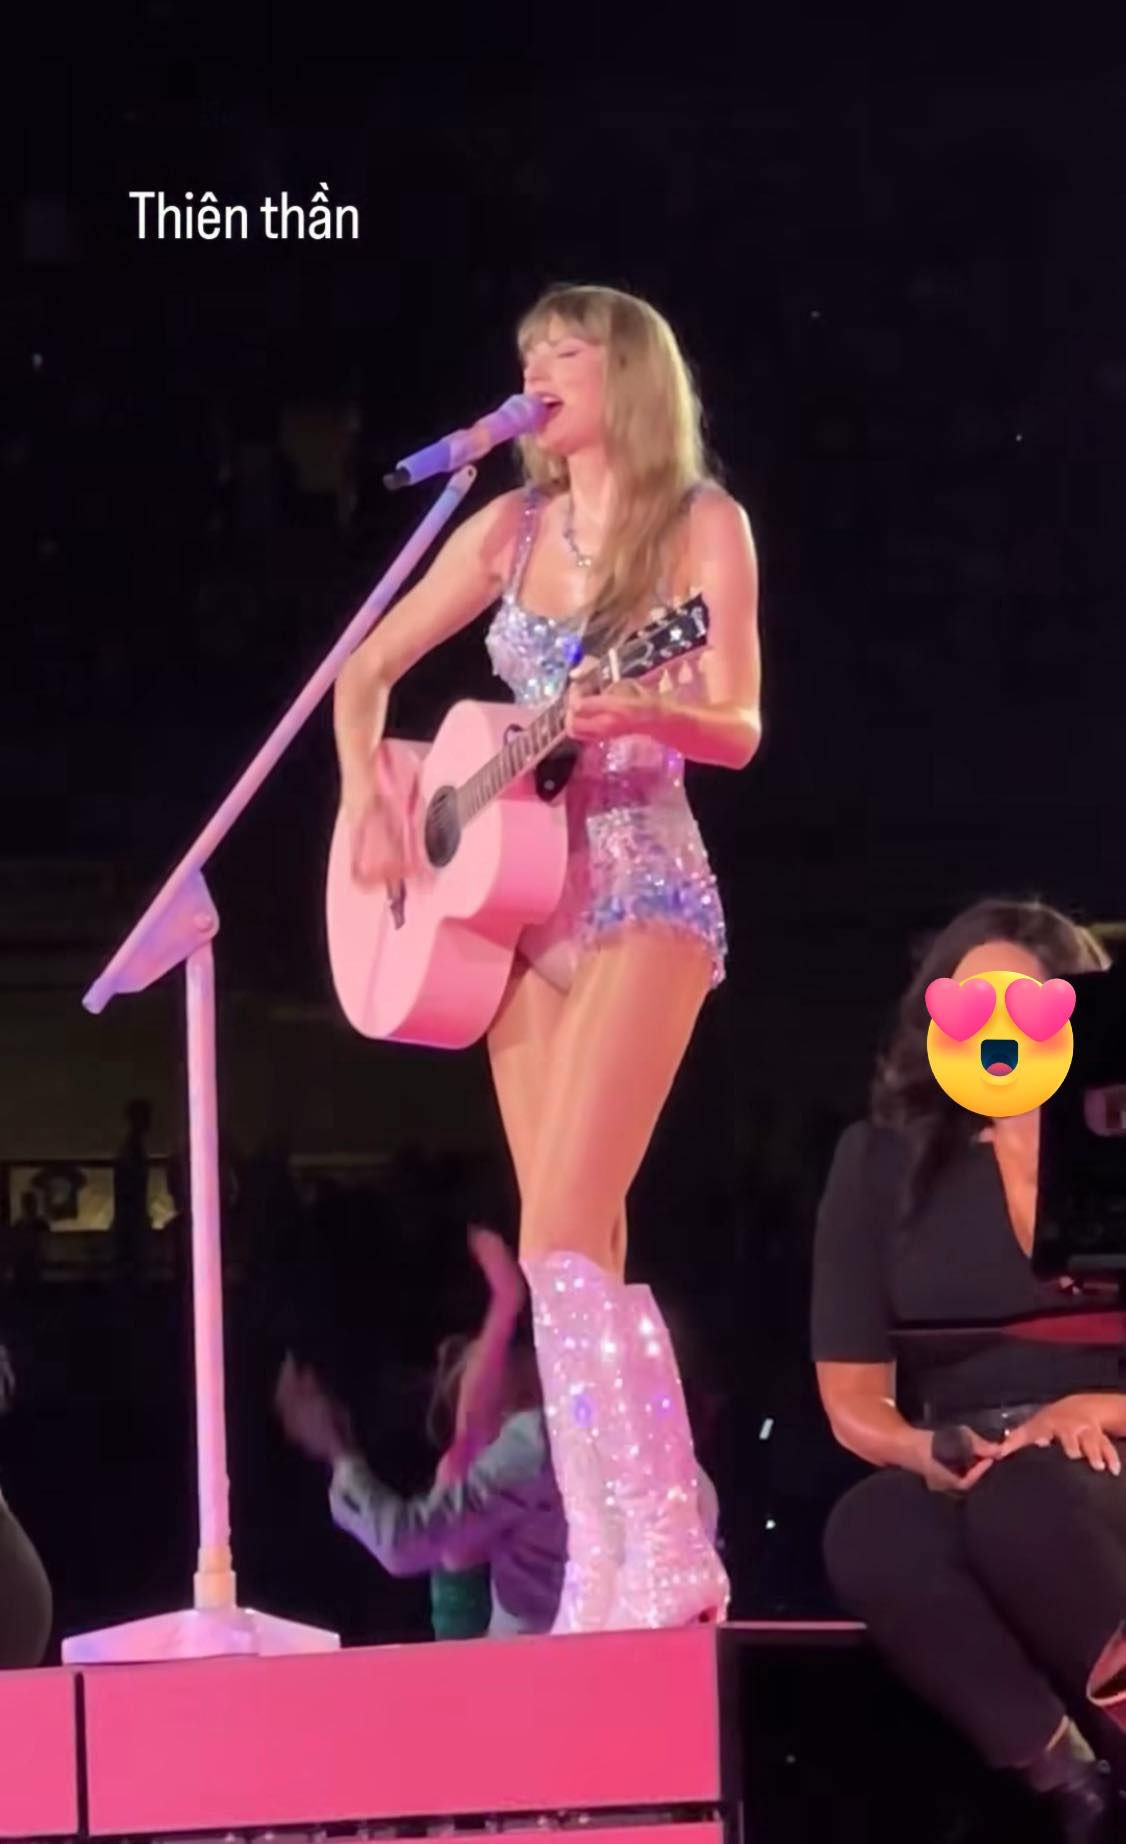 Đêm concert The Eras Tour của Taylor Swift nhận được sự quan tâm của giới yêu nhạc trên toàn thế giới.